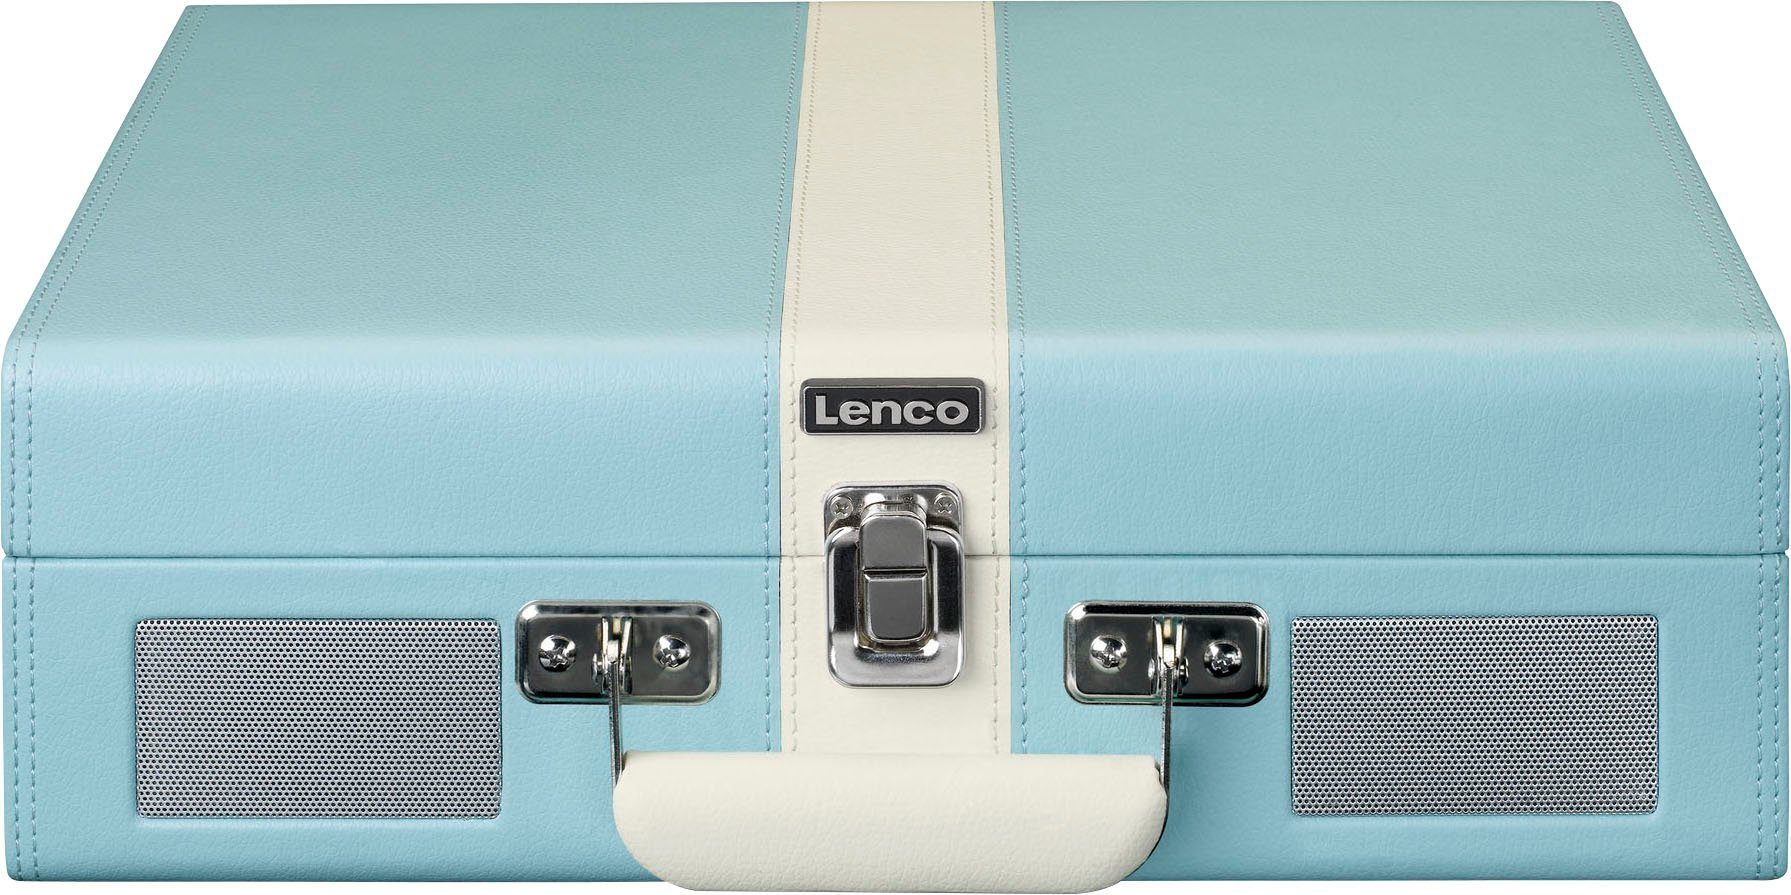 Plattenspieler Lsp. Koffer-Plattenspieler mit Blau-Weiß eingebauten Lenco BT und (Riemenantrieb)